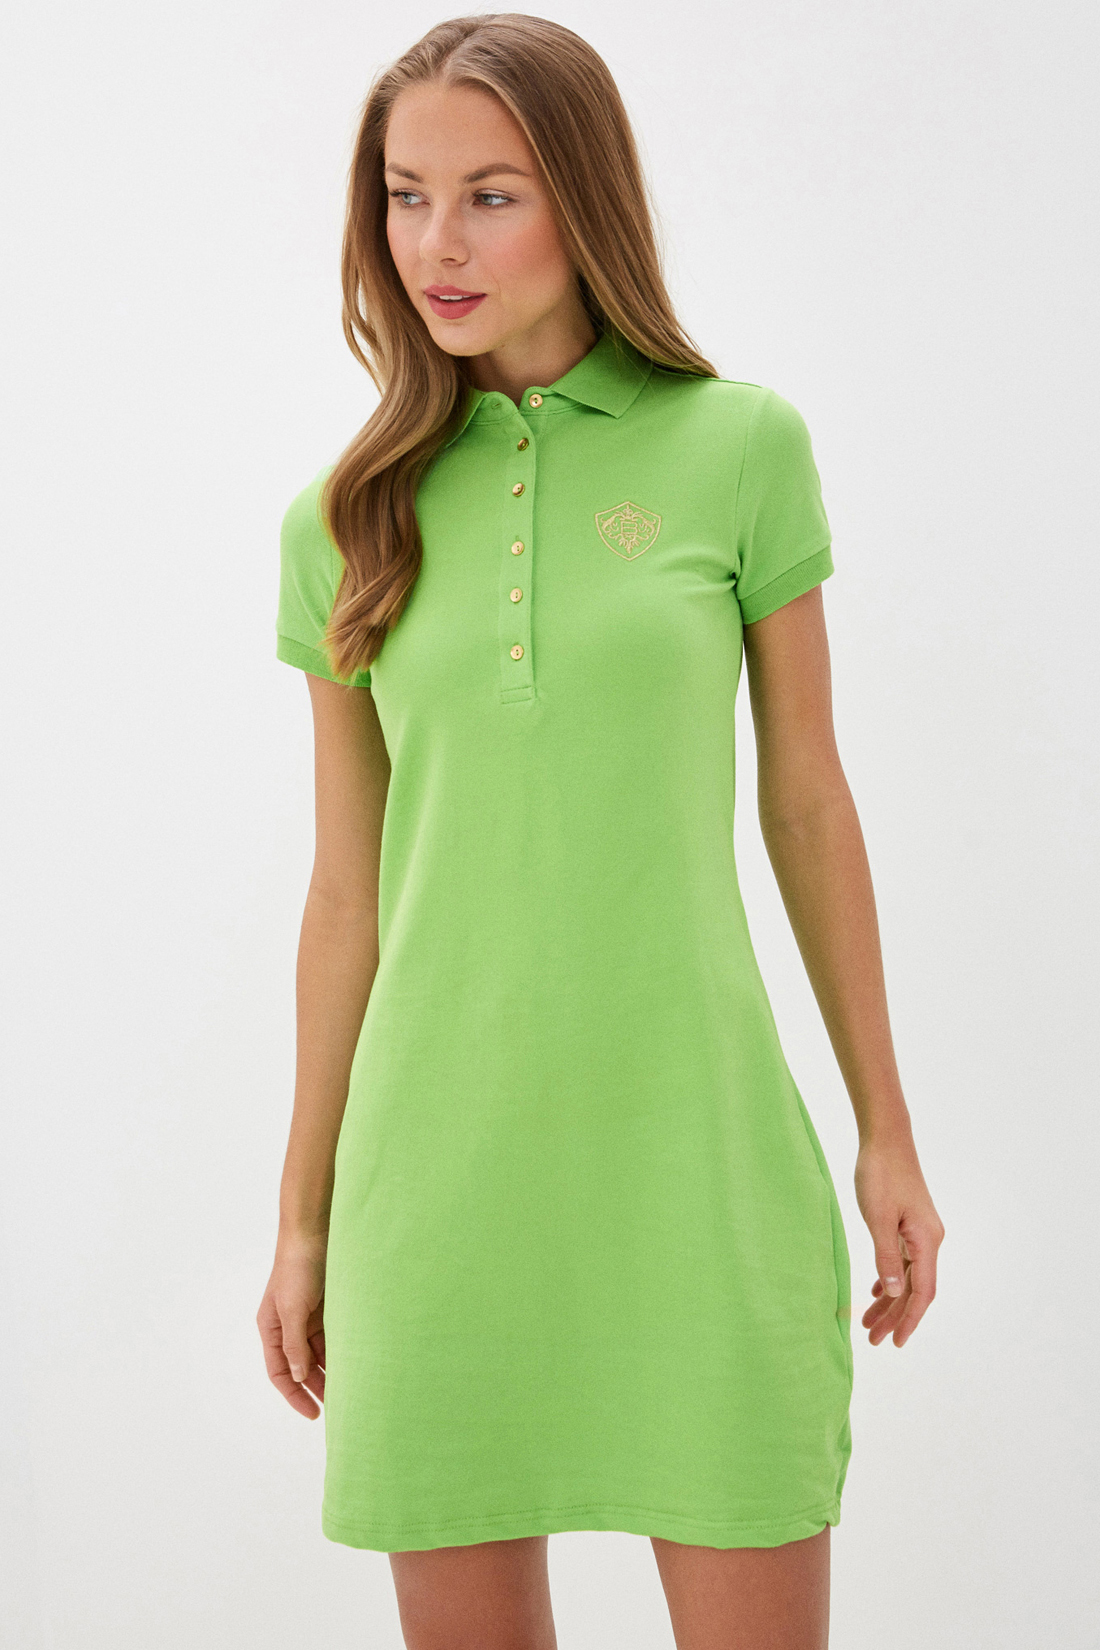 Платье-поло (арт. baon B450201), размер XL, цвет зеленый Платье-поло (арт. baon B450201) - фото 4